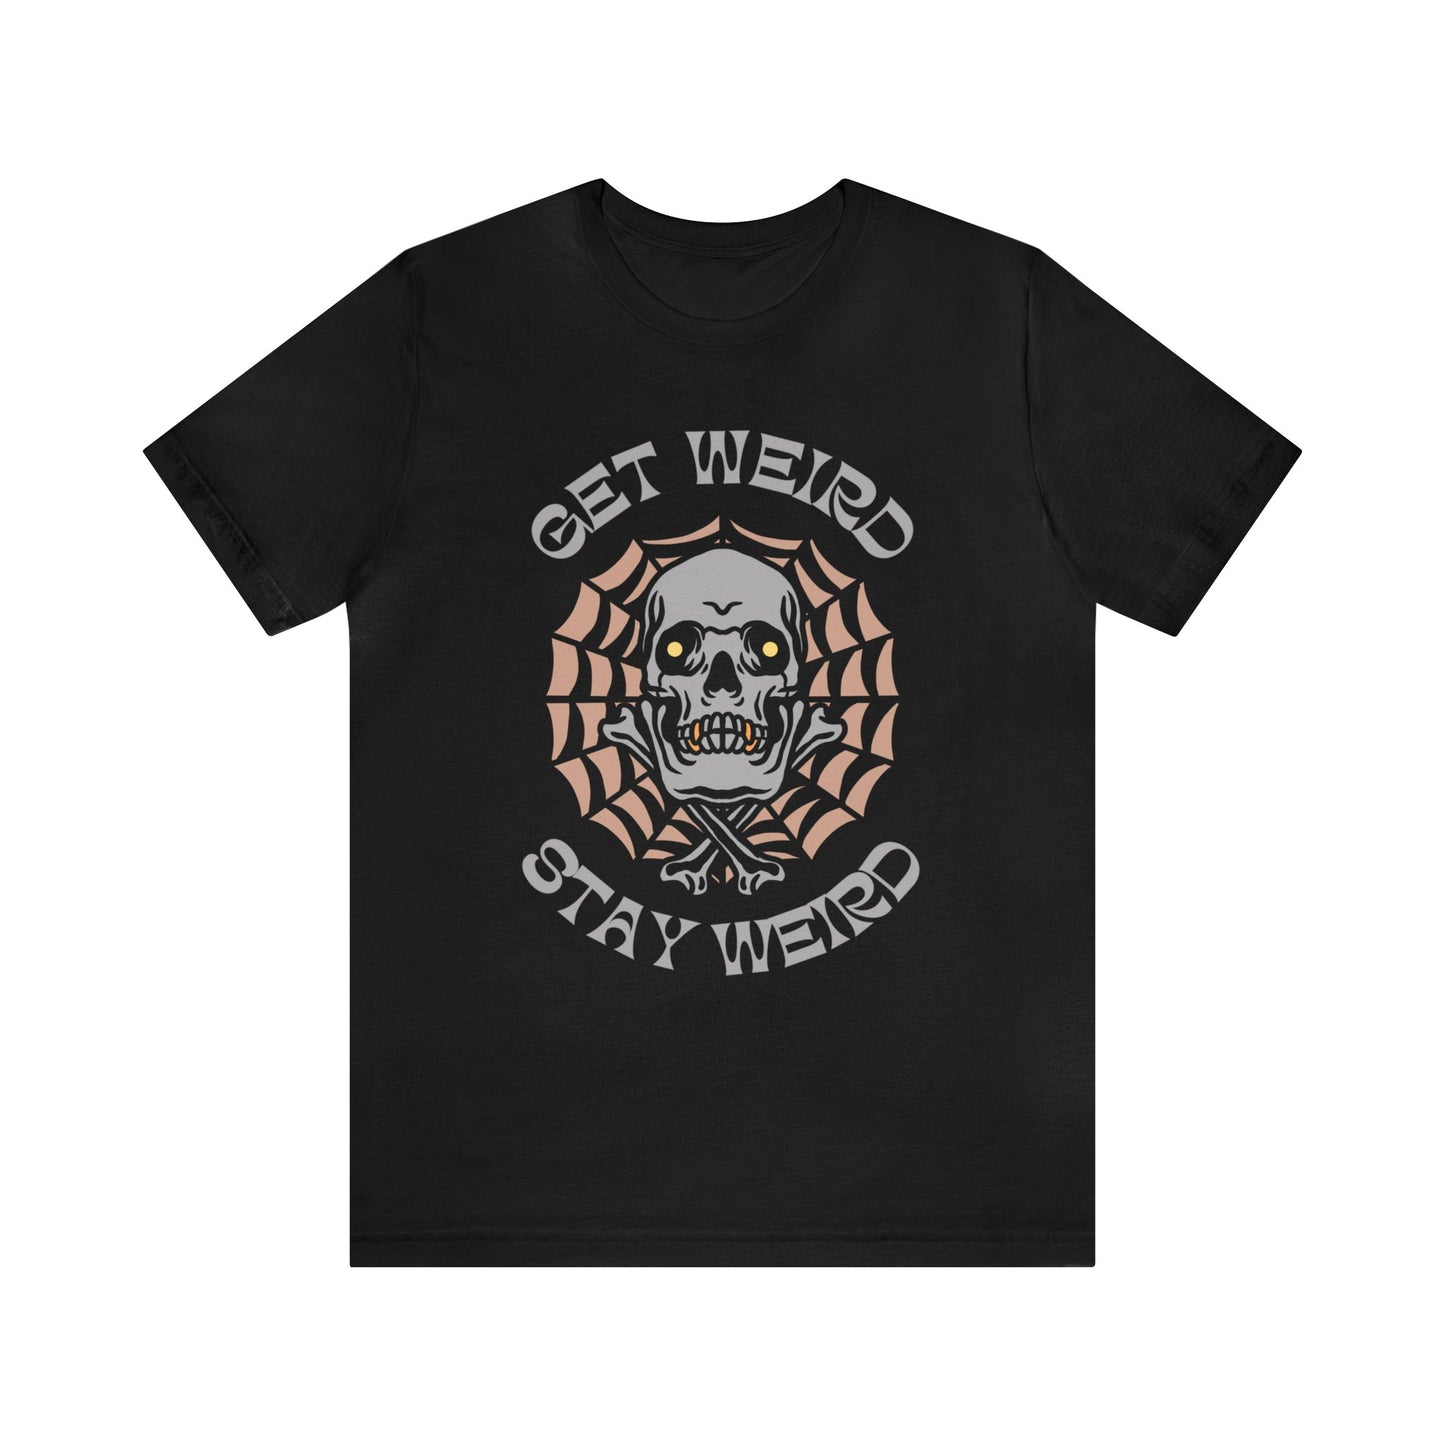 Get Weird Stay Weird Tattoo T-shirt / Traditional Tattoo Tee Shirt / Punk Rock Clothing Tshirt Rockabilly Psychobilly Freak Goth - Foxlark Crystal Jewelry